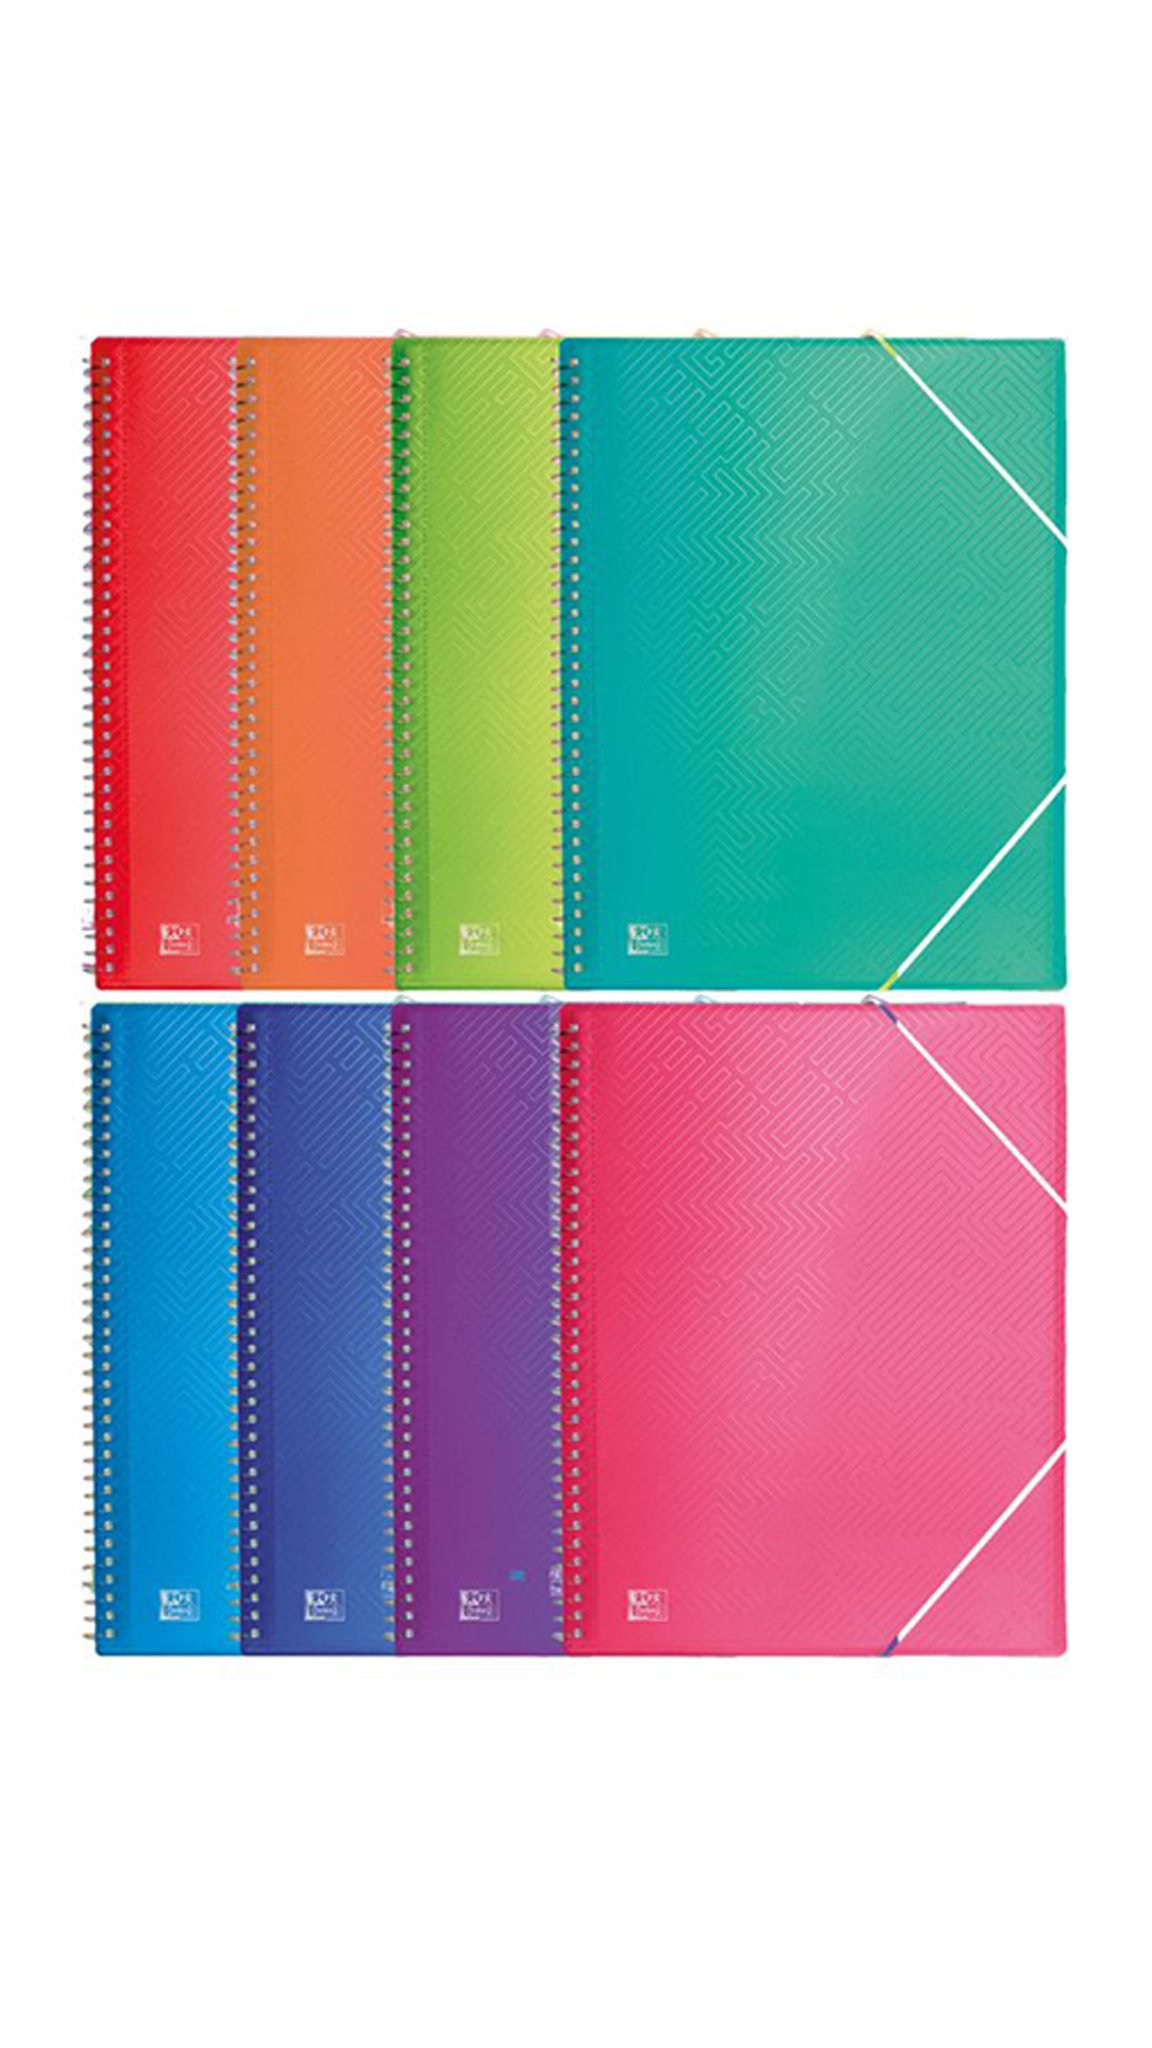 Carpeta espiral fundas Oxford en colores surtidos – 60 fundas-es-img-1